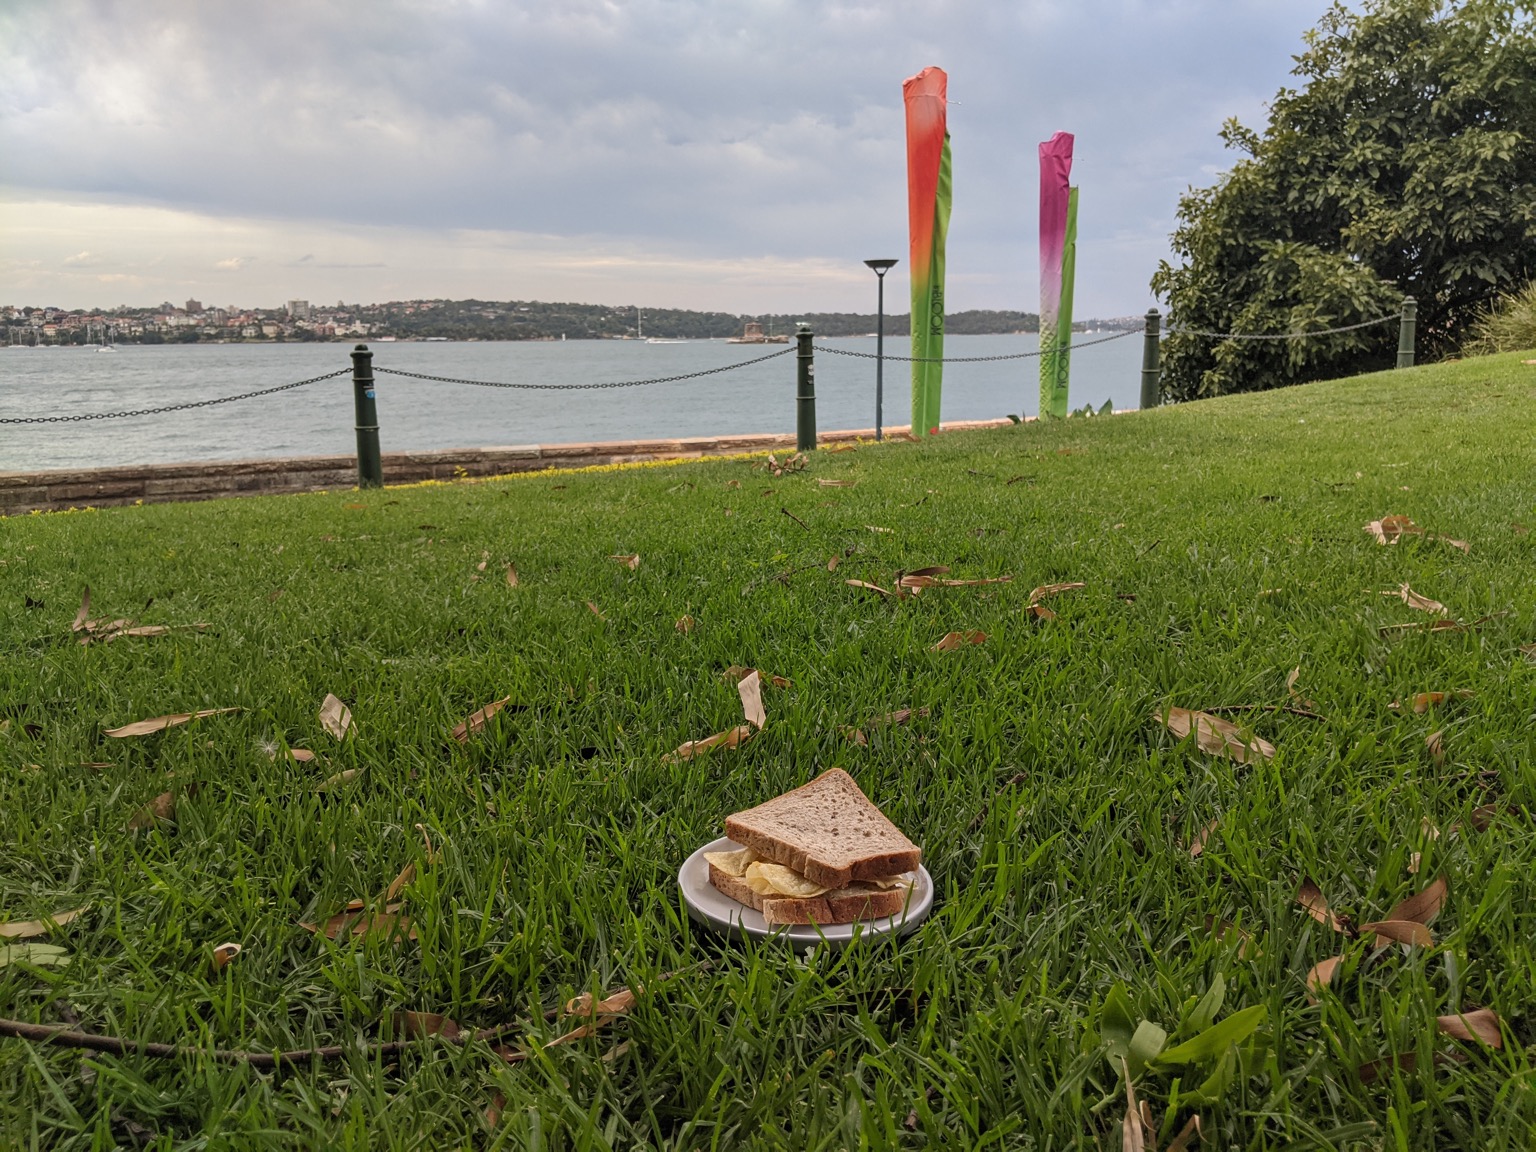 Plated crisp sandwich on grass near water